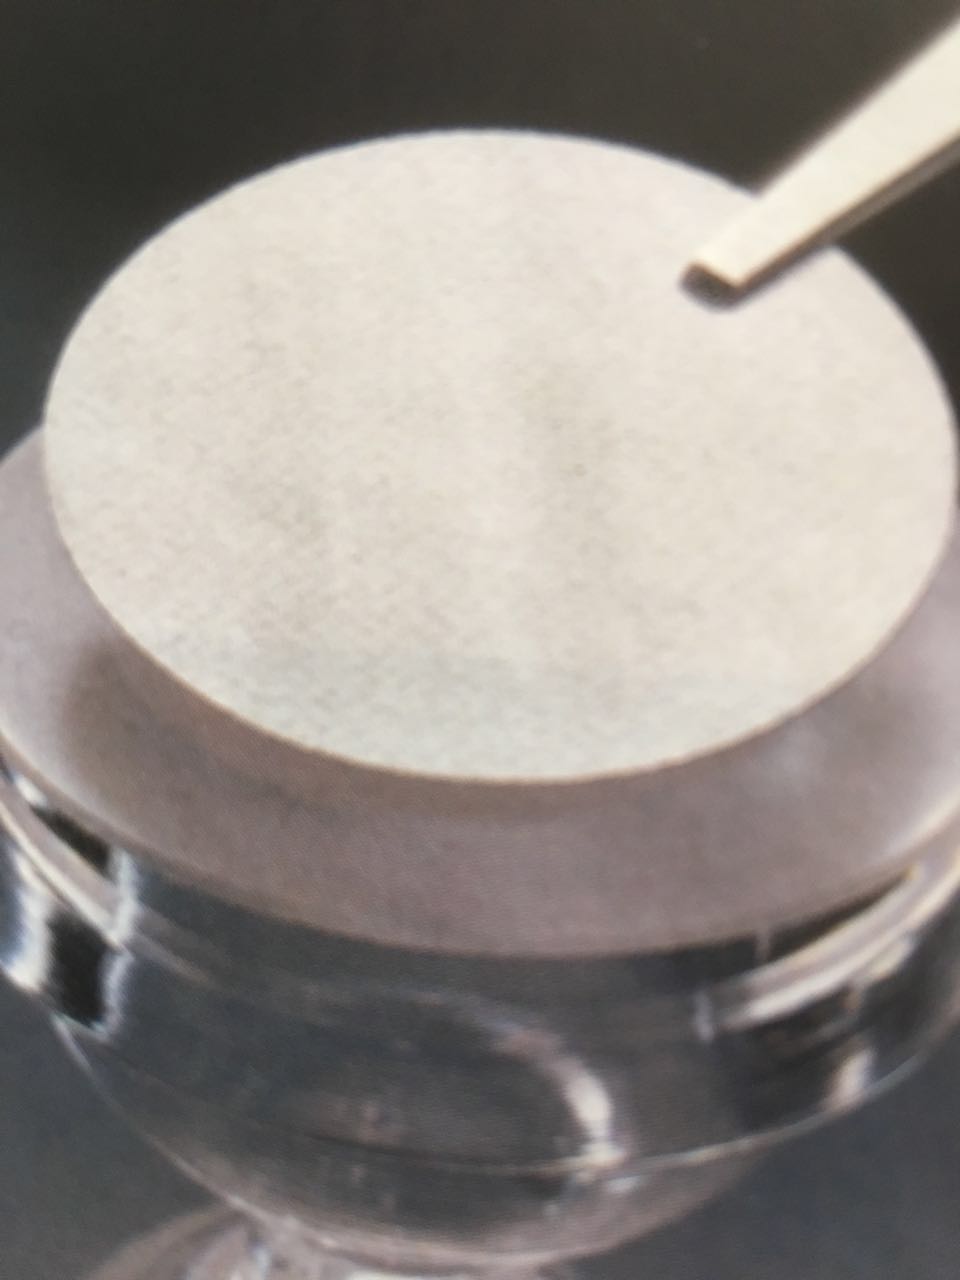 氨制·硝酸·银试纸药典北京华科盛精细化工产品贸易有限公司